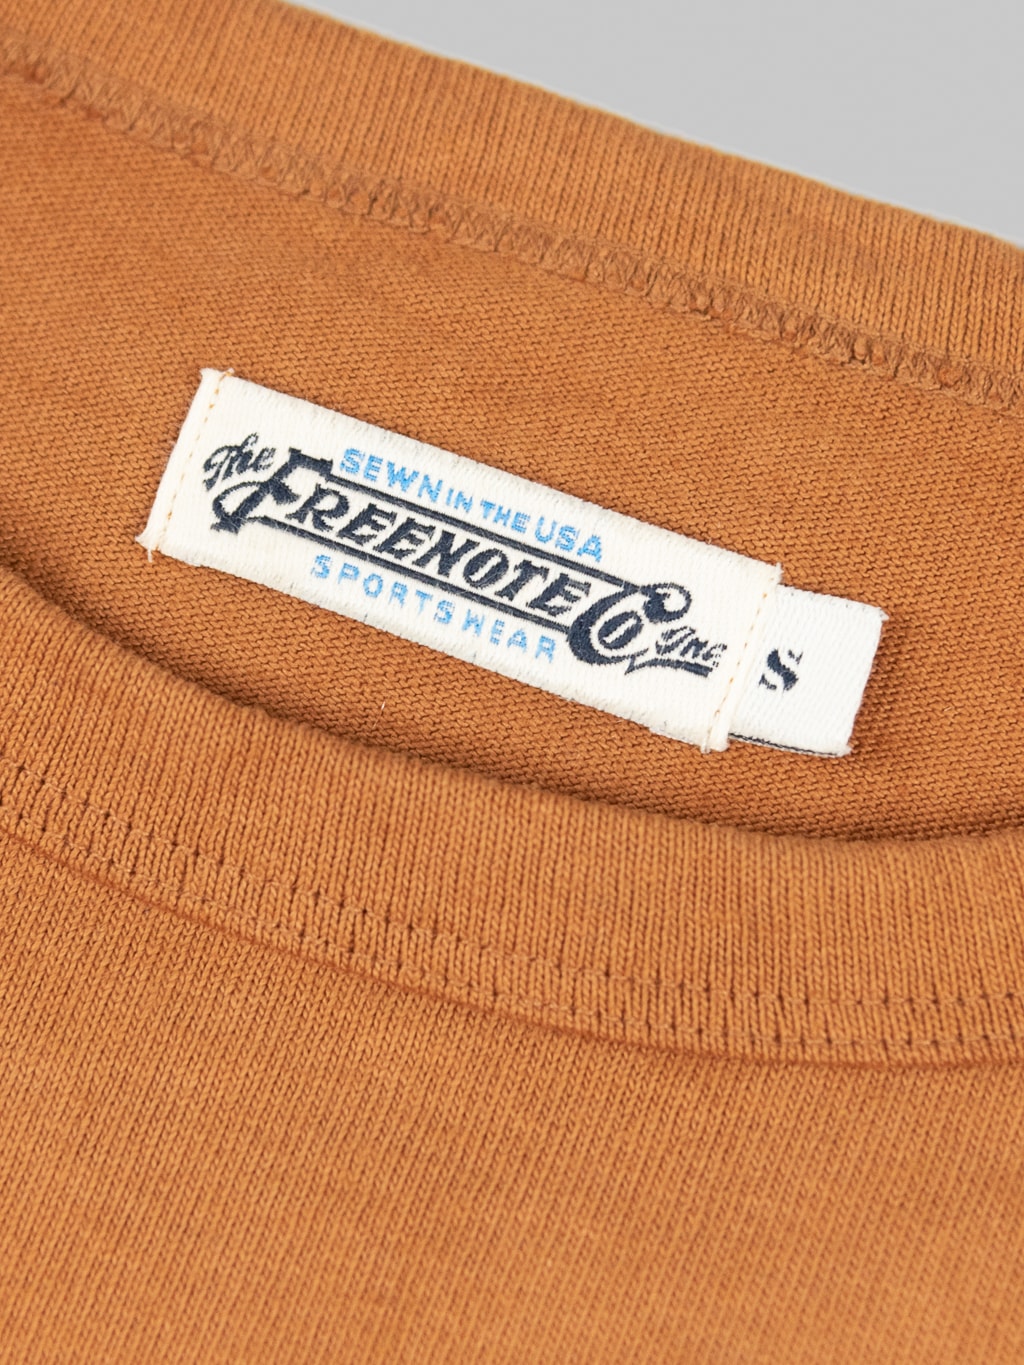 Freenote Cloth 13oz Pocket Tshirt Tobacco  brand interior tag